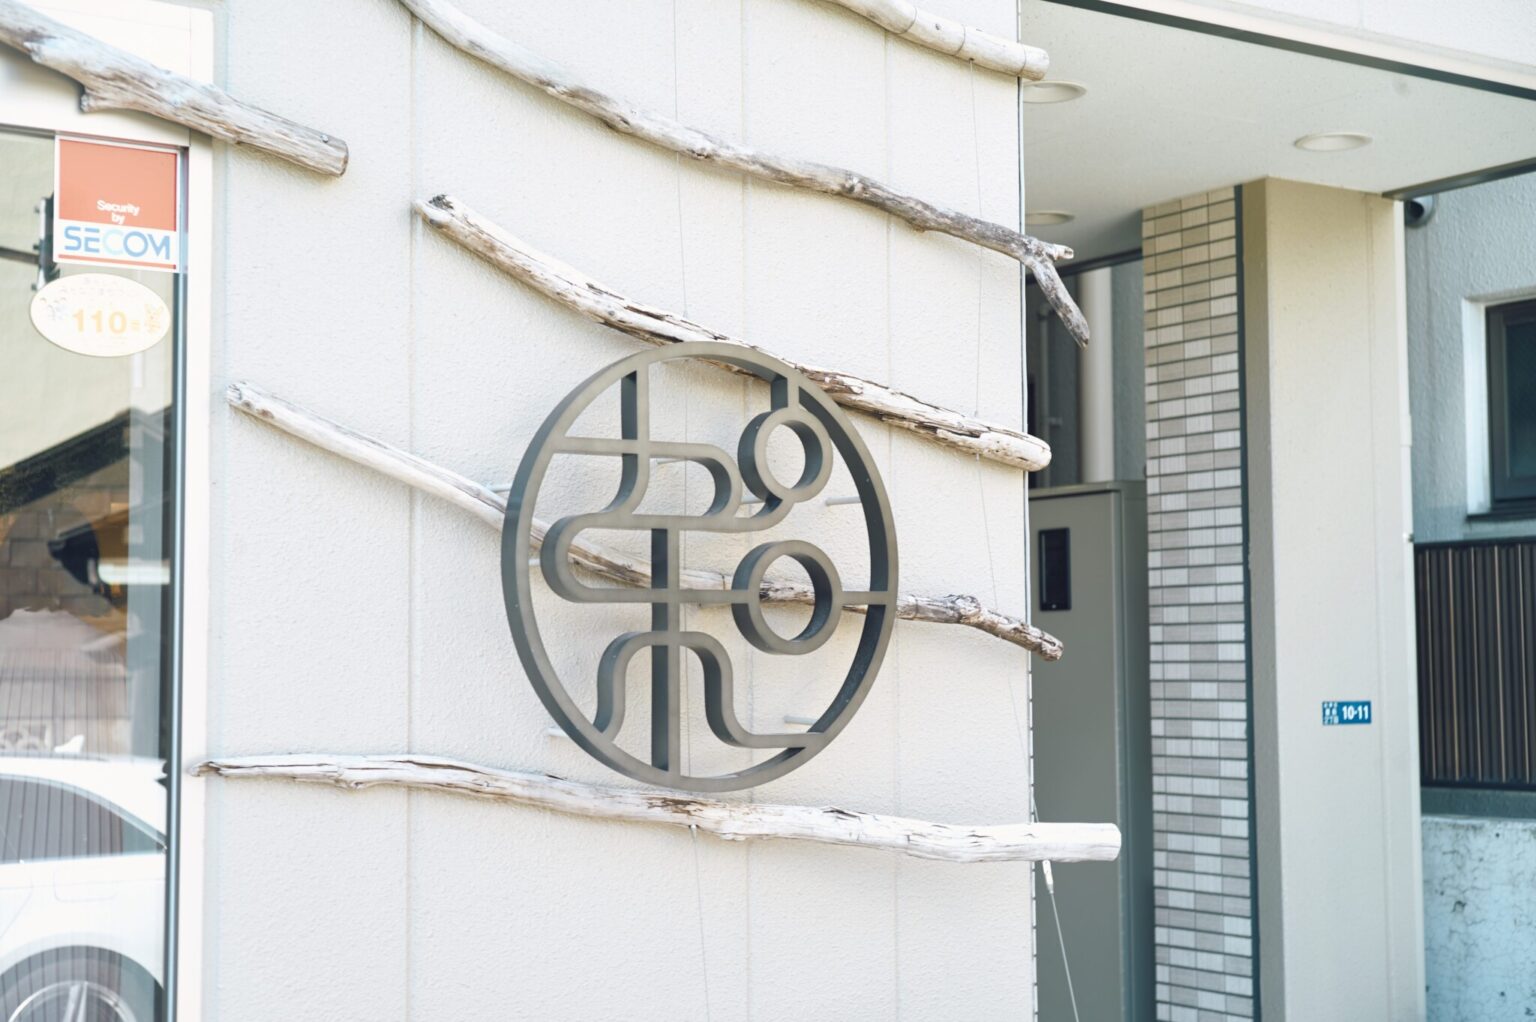 店前に飾られたお店のロゴ。「加和」のデザインがおしゃれ。